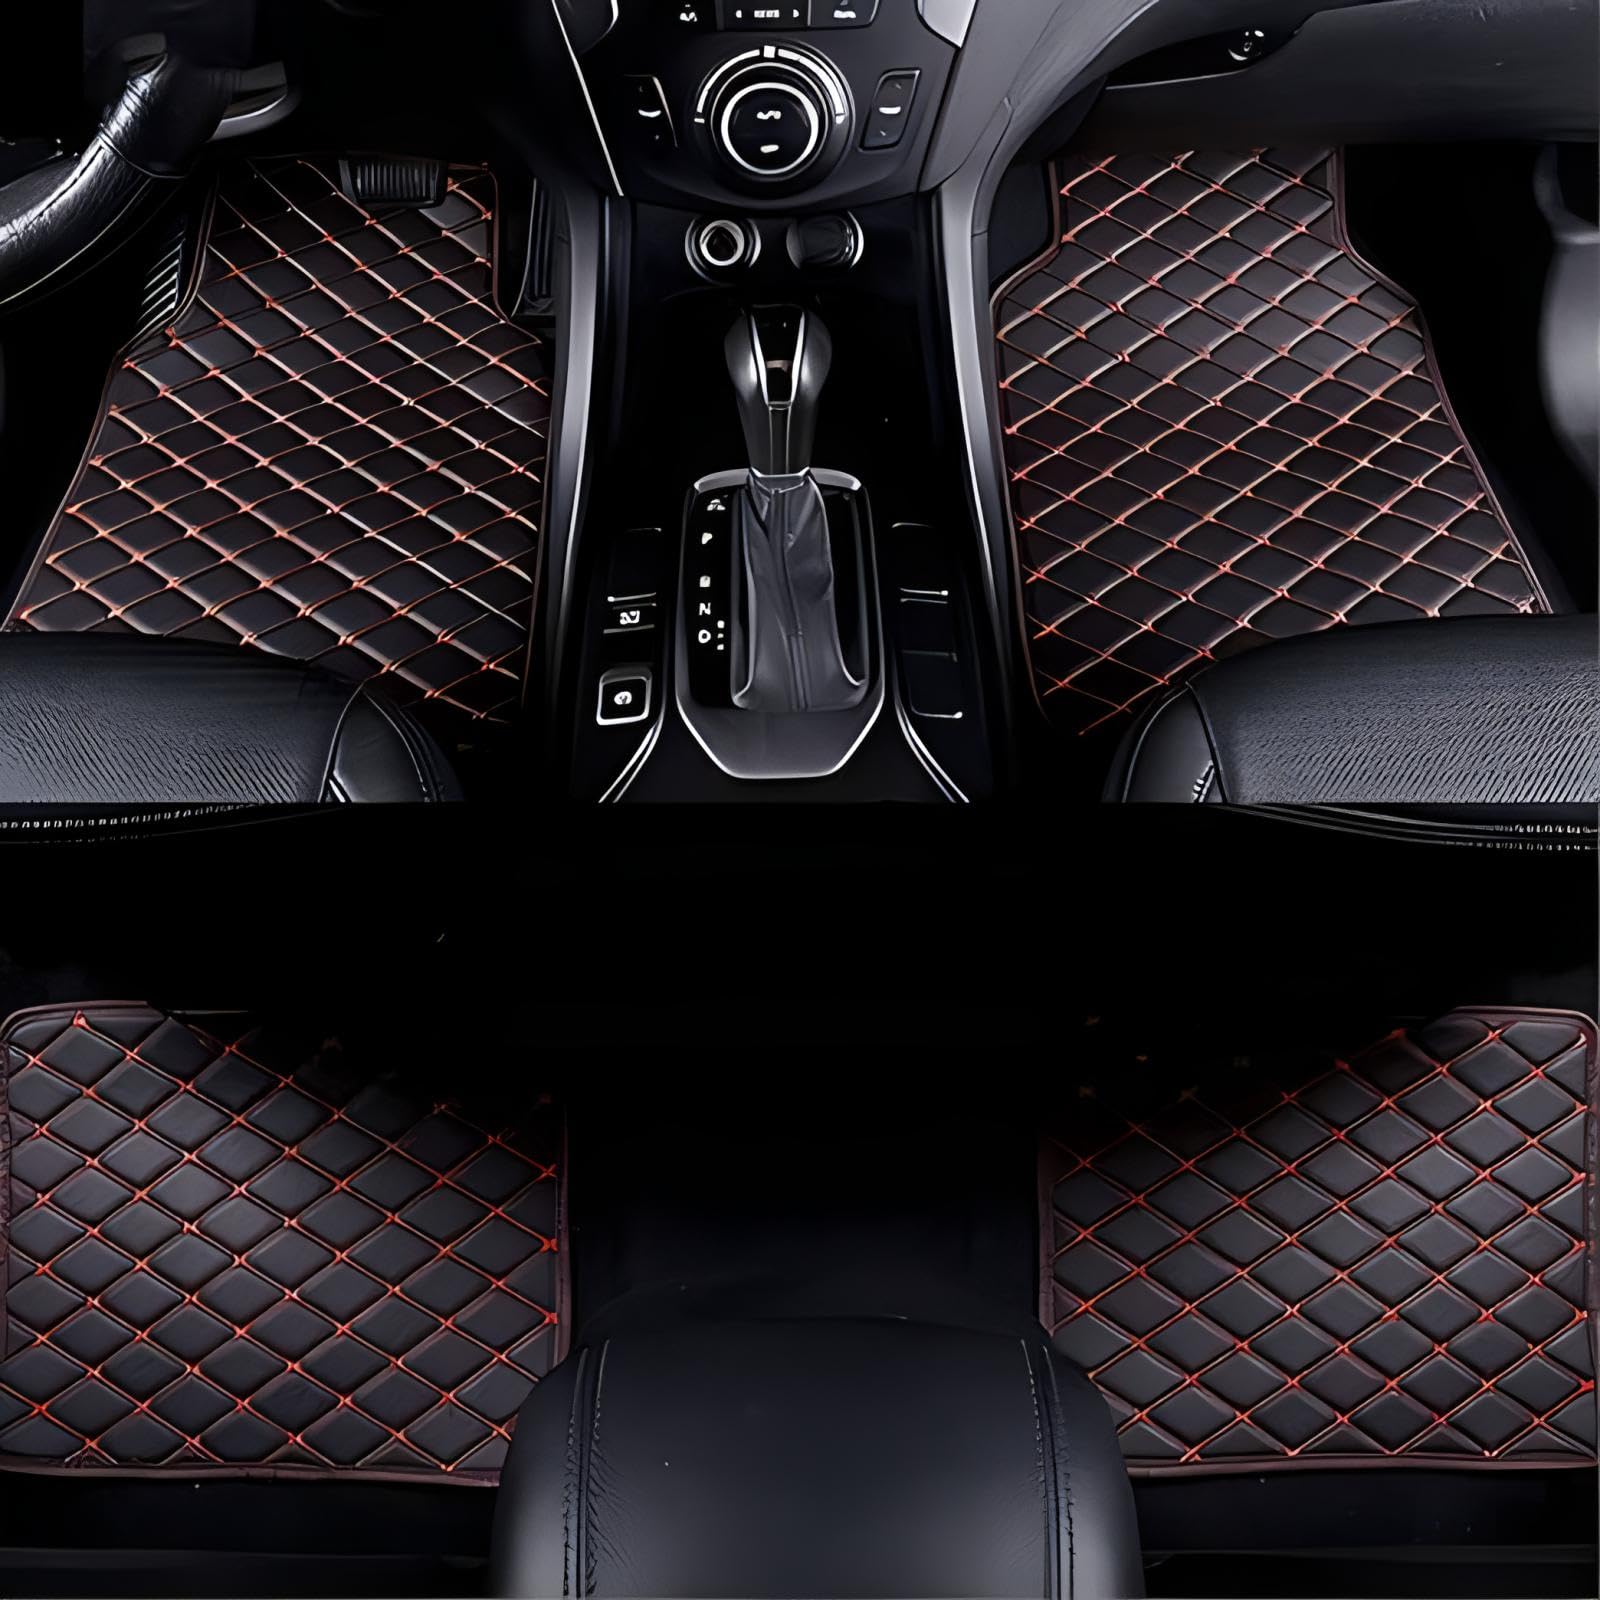 Auto Leder Fußmatten für Benz ML-Class AMG W166 2013 2014 2015, Wasserdichtes Antirutsch Fussmatten Auto Fußmatte Fußmatten Set,-Black Red von TARCIN